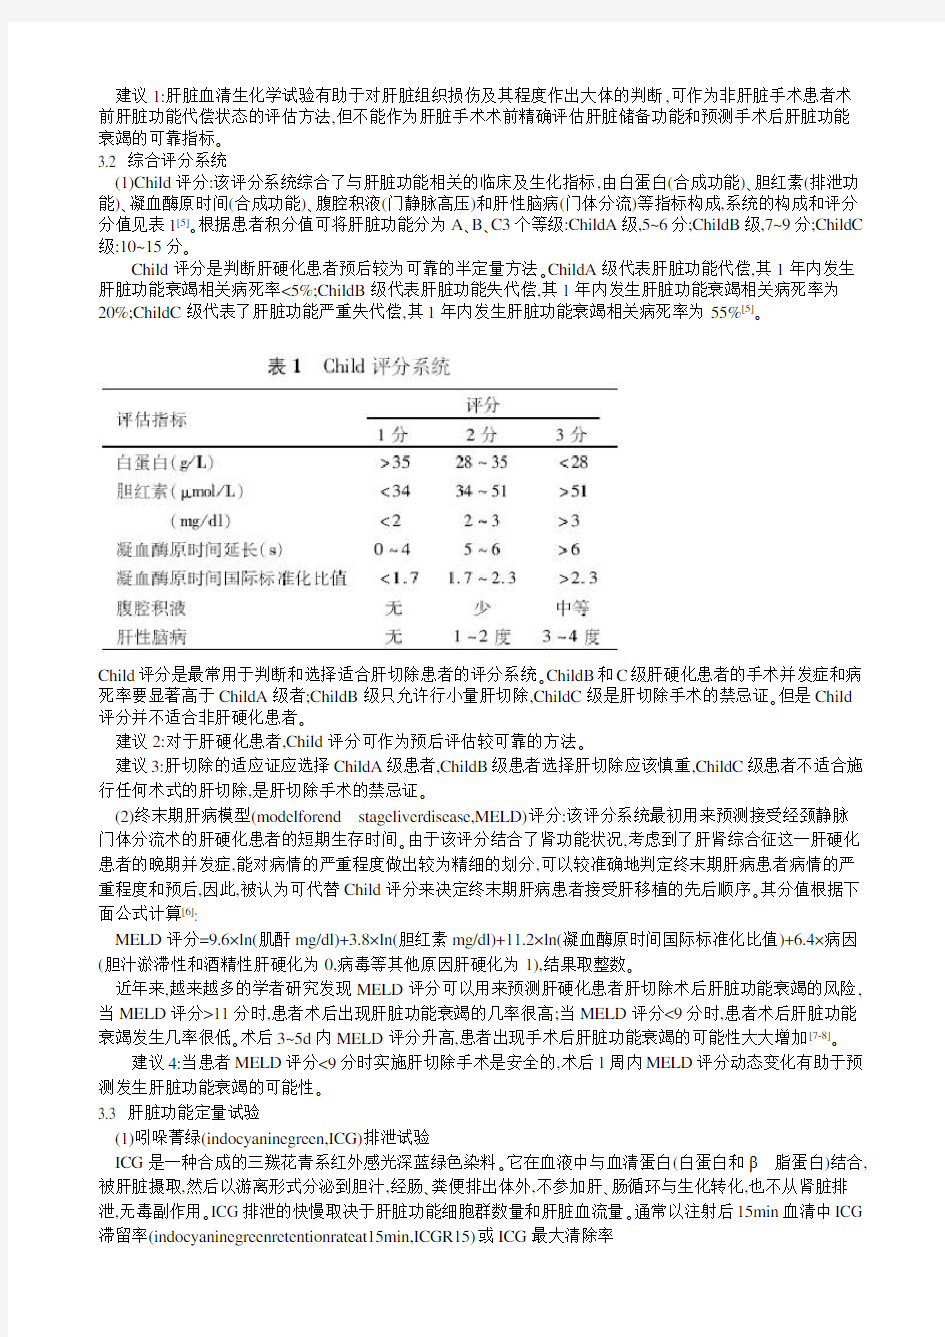 肝切除术前肝脏储备功能评估的专家共识(2011版)